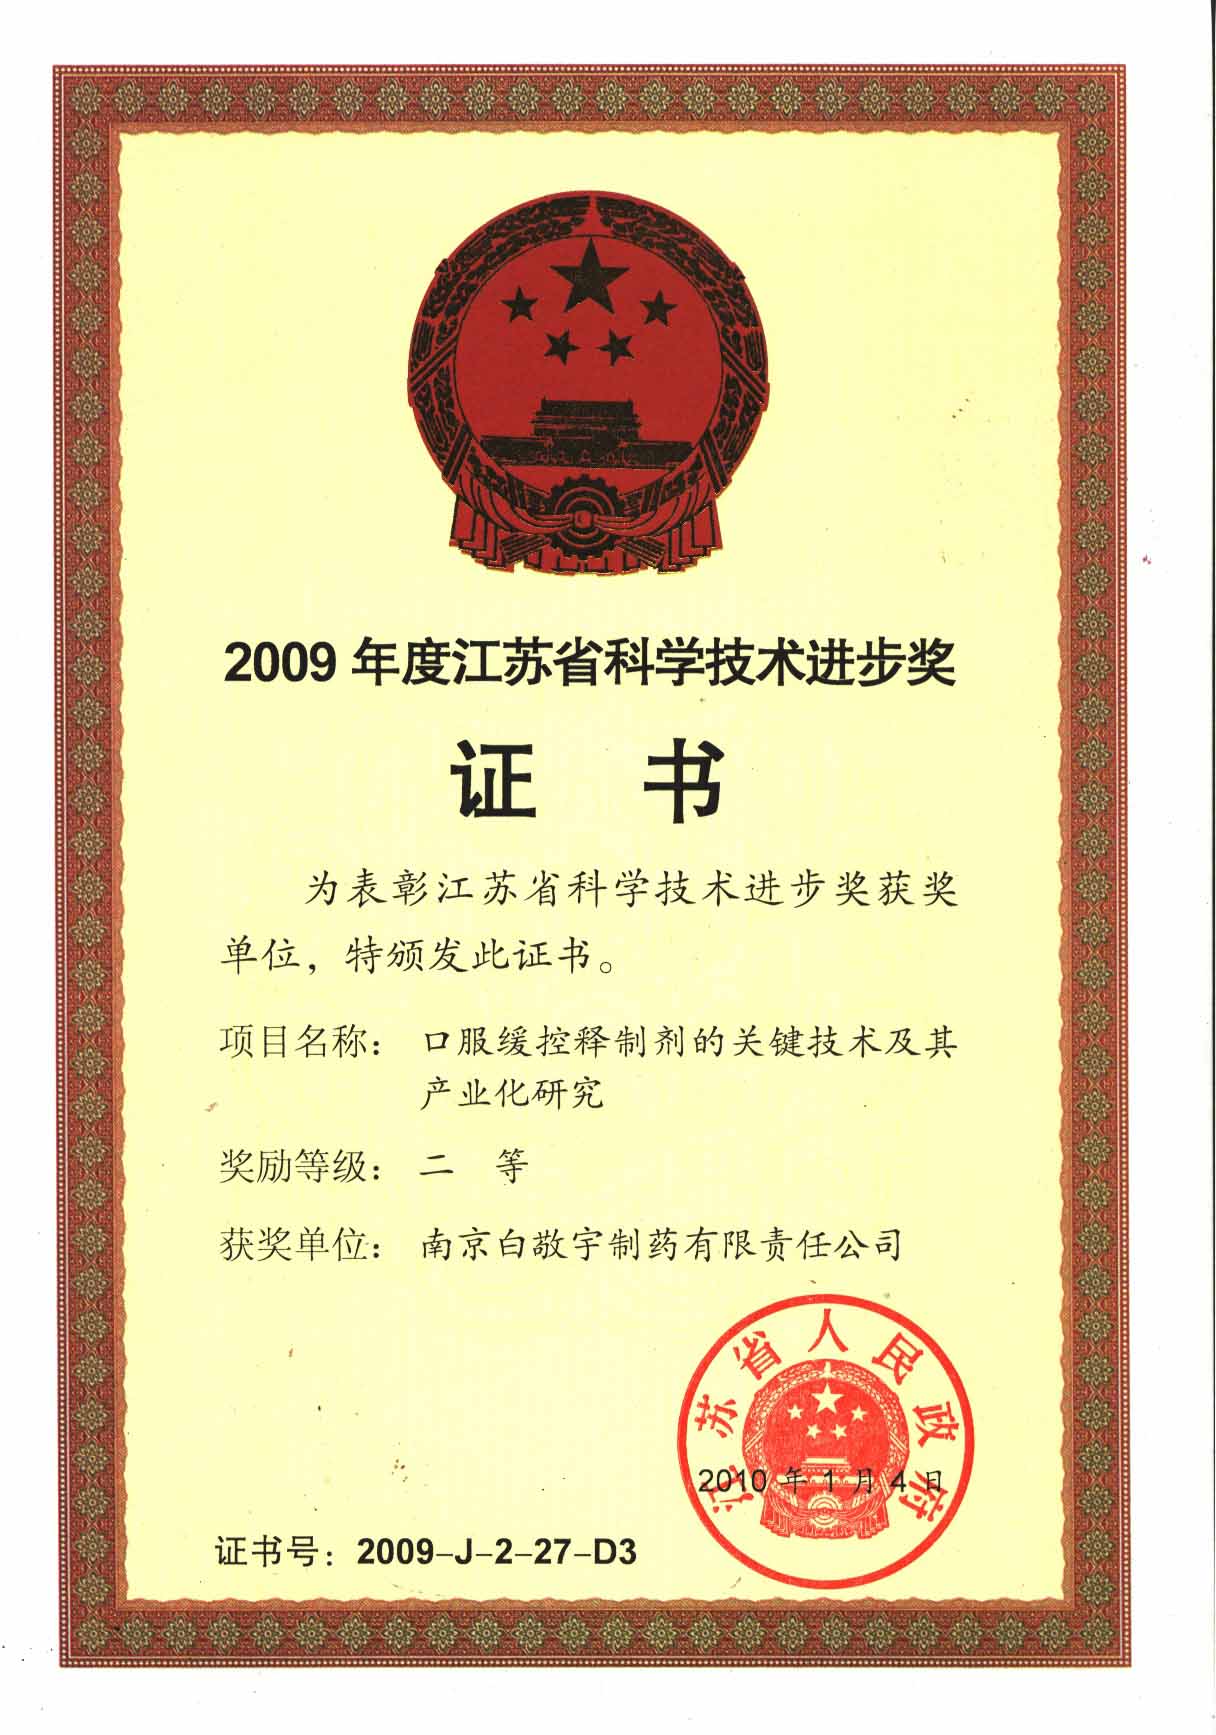 2009年緩釋技術科學進步二等獎